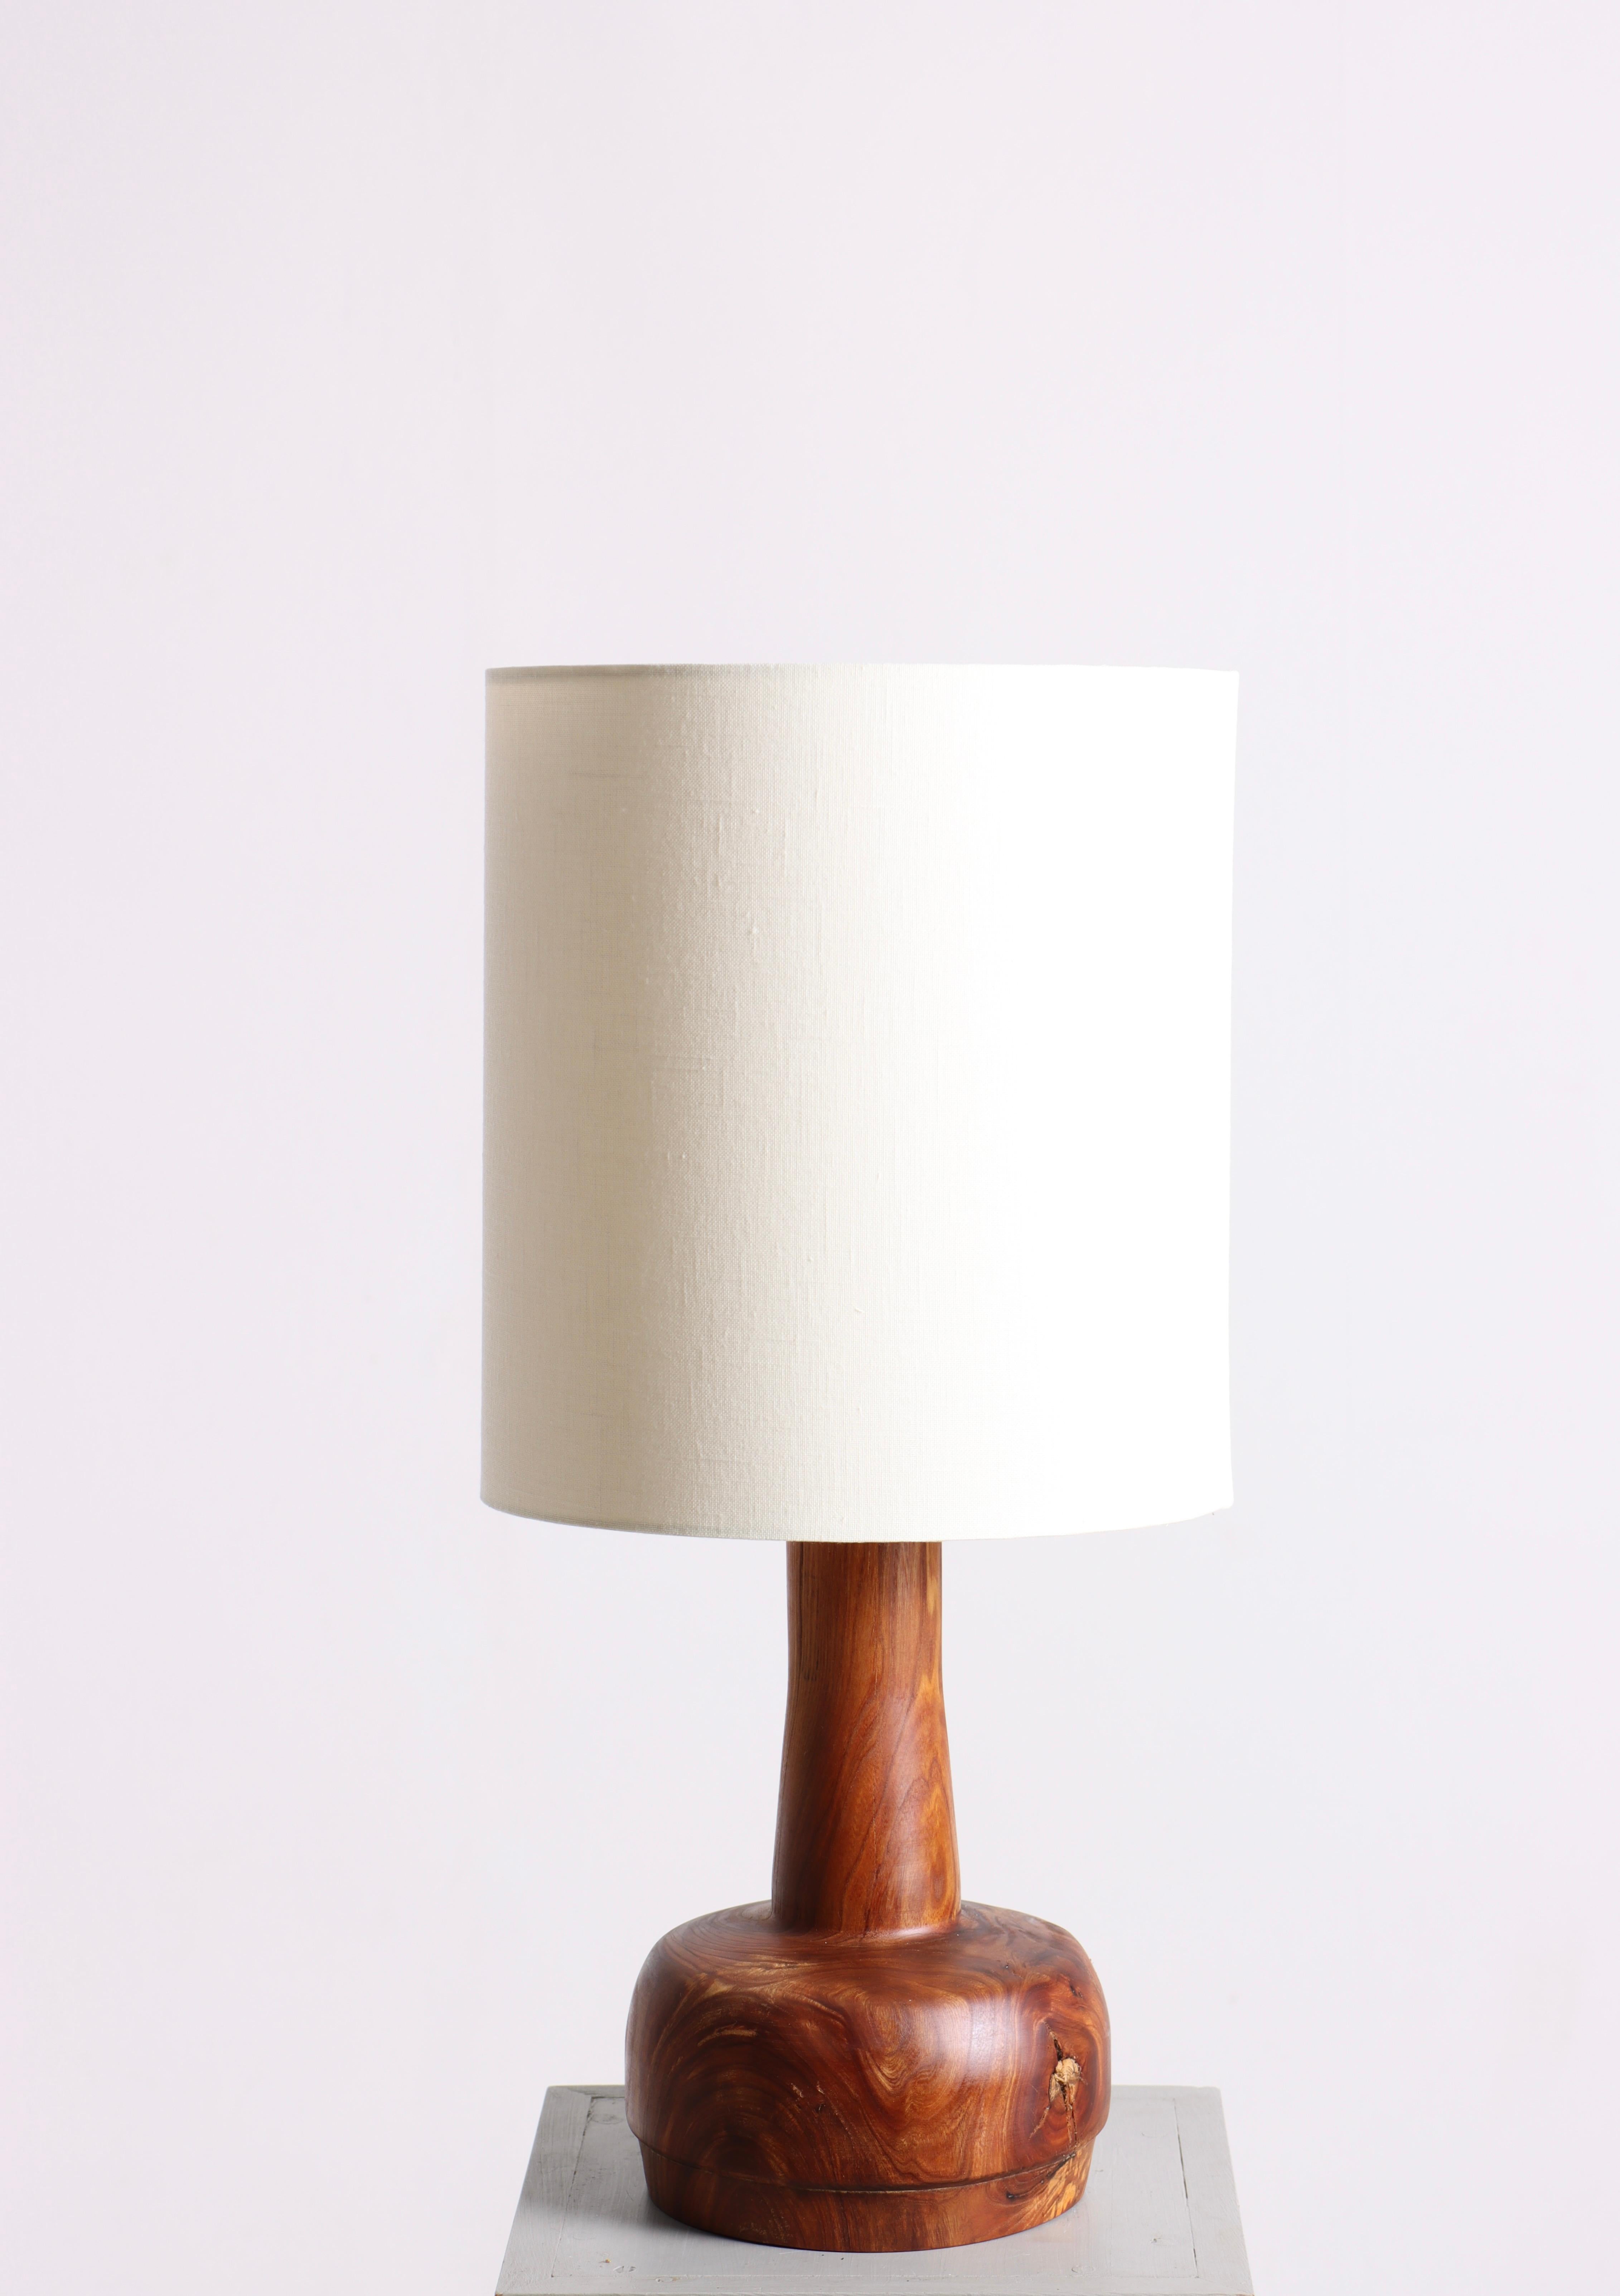 Lampe de table en teck massif conçue et fabriquée au Danemark. La lampe a une très belle patine chaude. Excellent état d'origine.